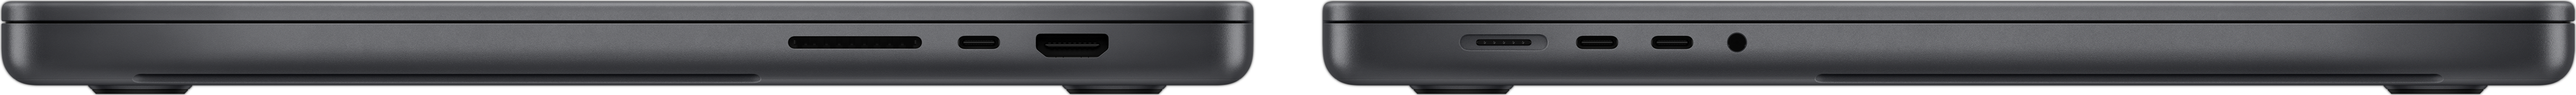 Vista lateral de un MacBook Pro que destaca la ranura para tarjetas SDXC, los tres puertos Thunderbolt 4, el puerto HDMI, el puerto de carga MagSafe 3 y la toma para auriculares.